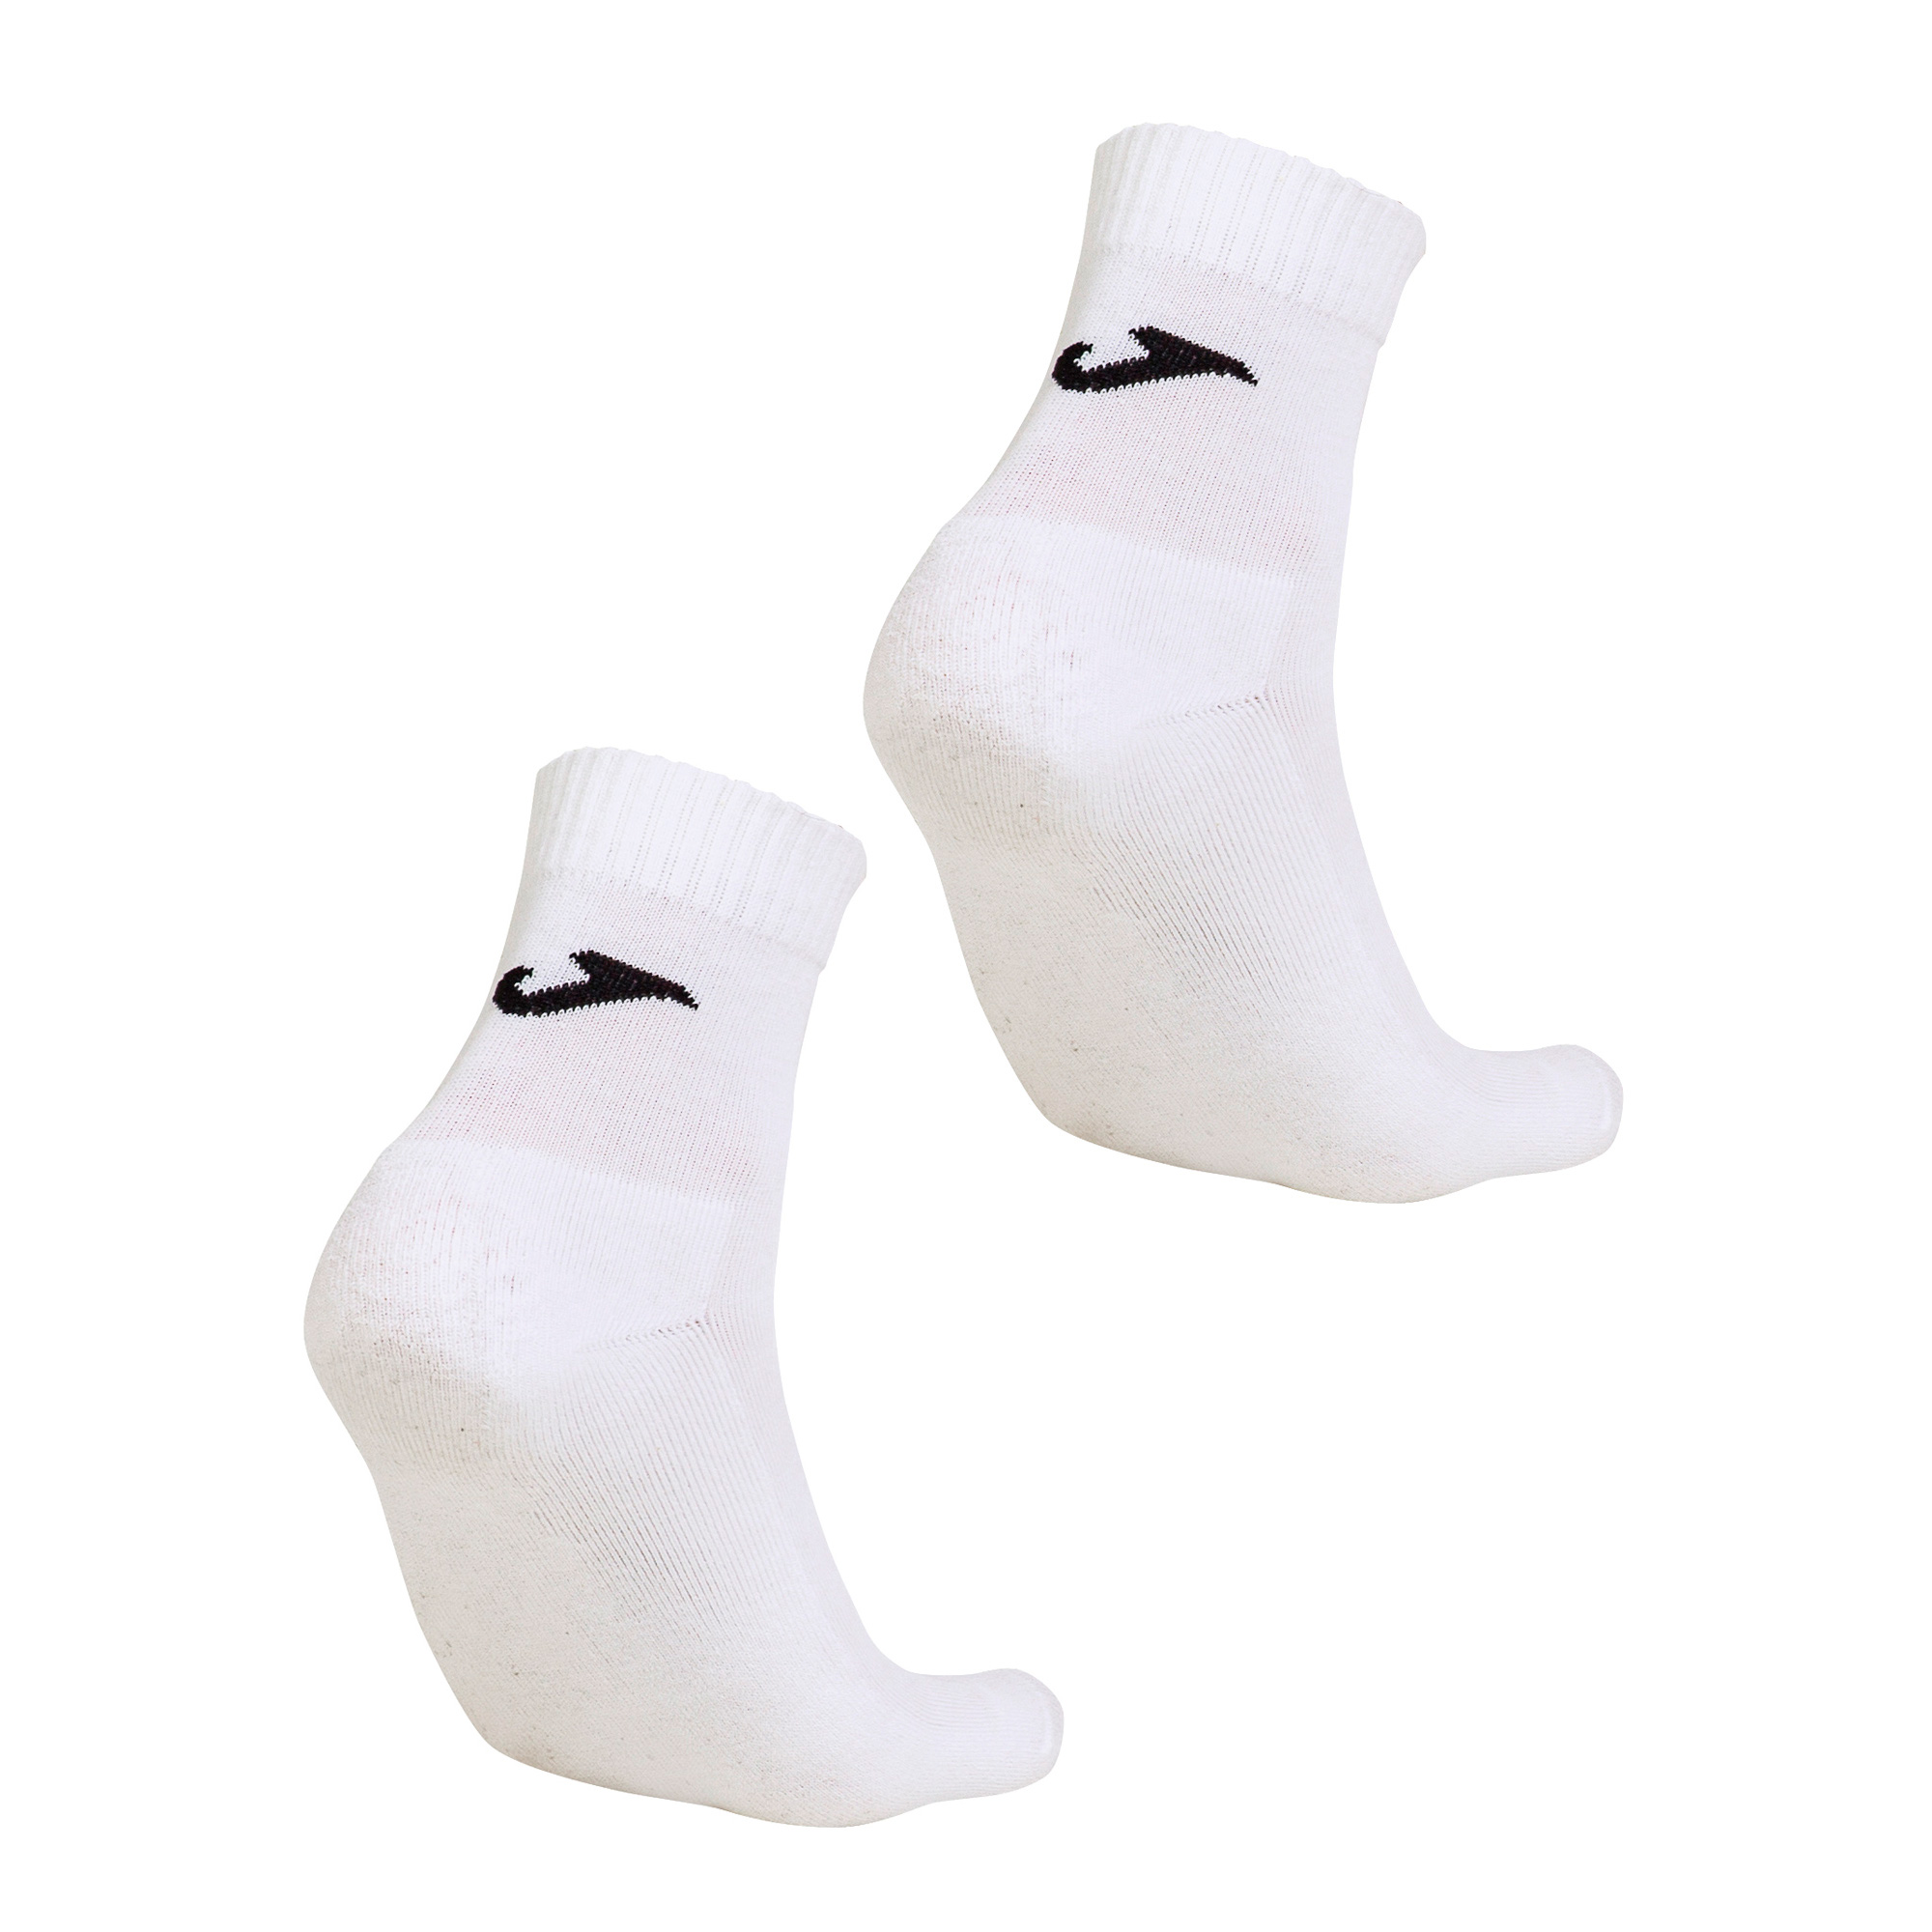 Носки Joma. Мужские спортивные тренировочные носки.